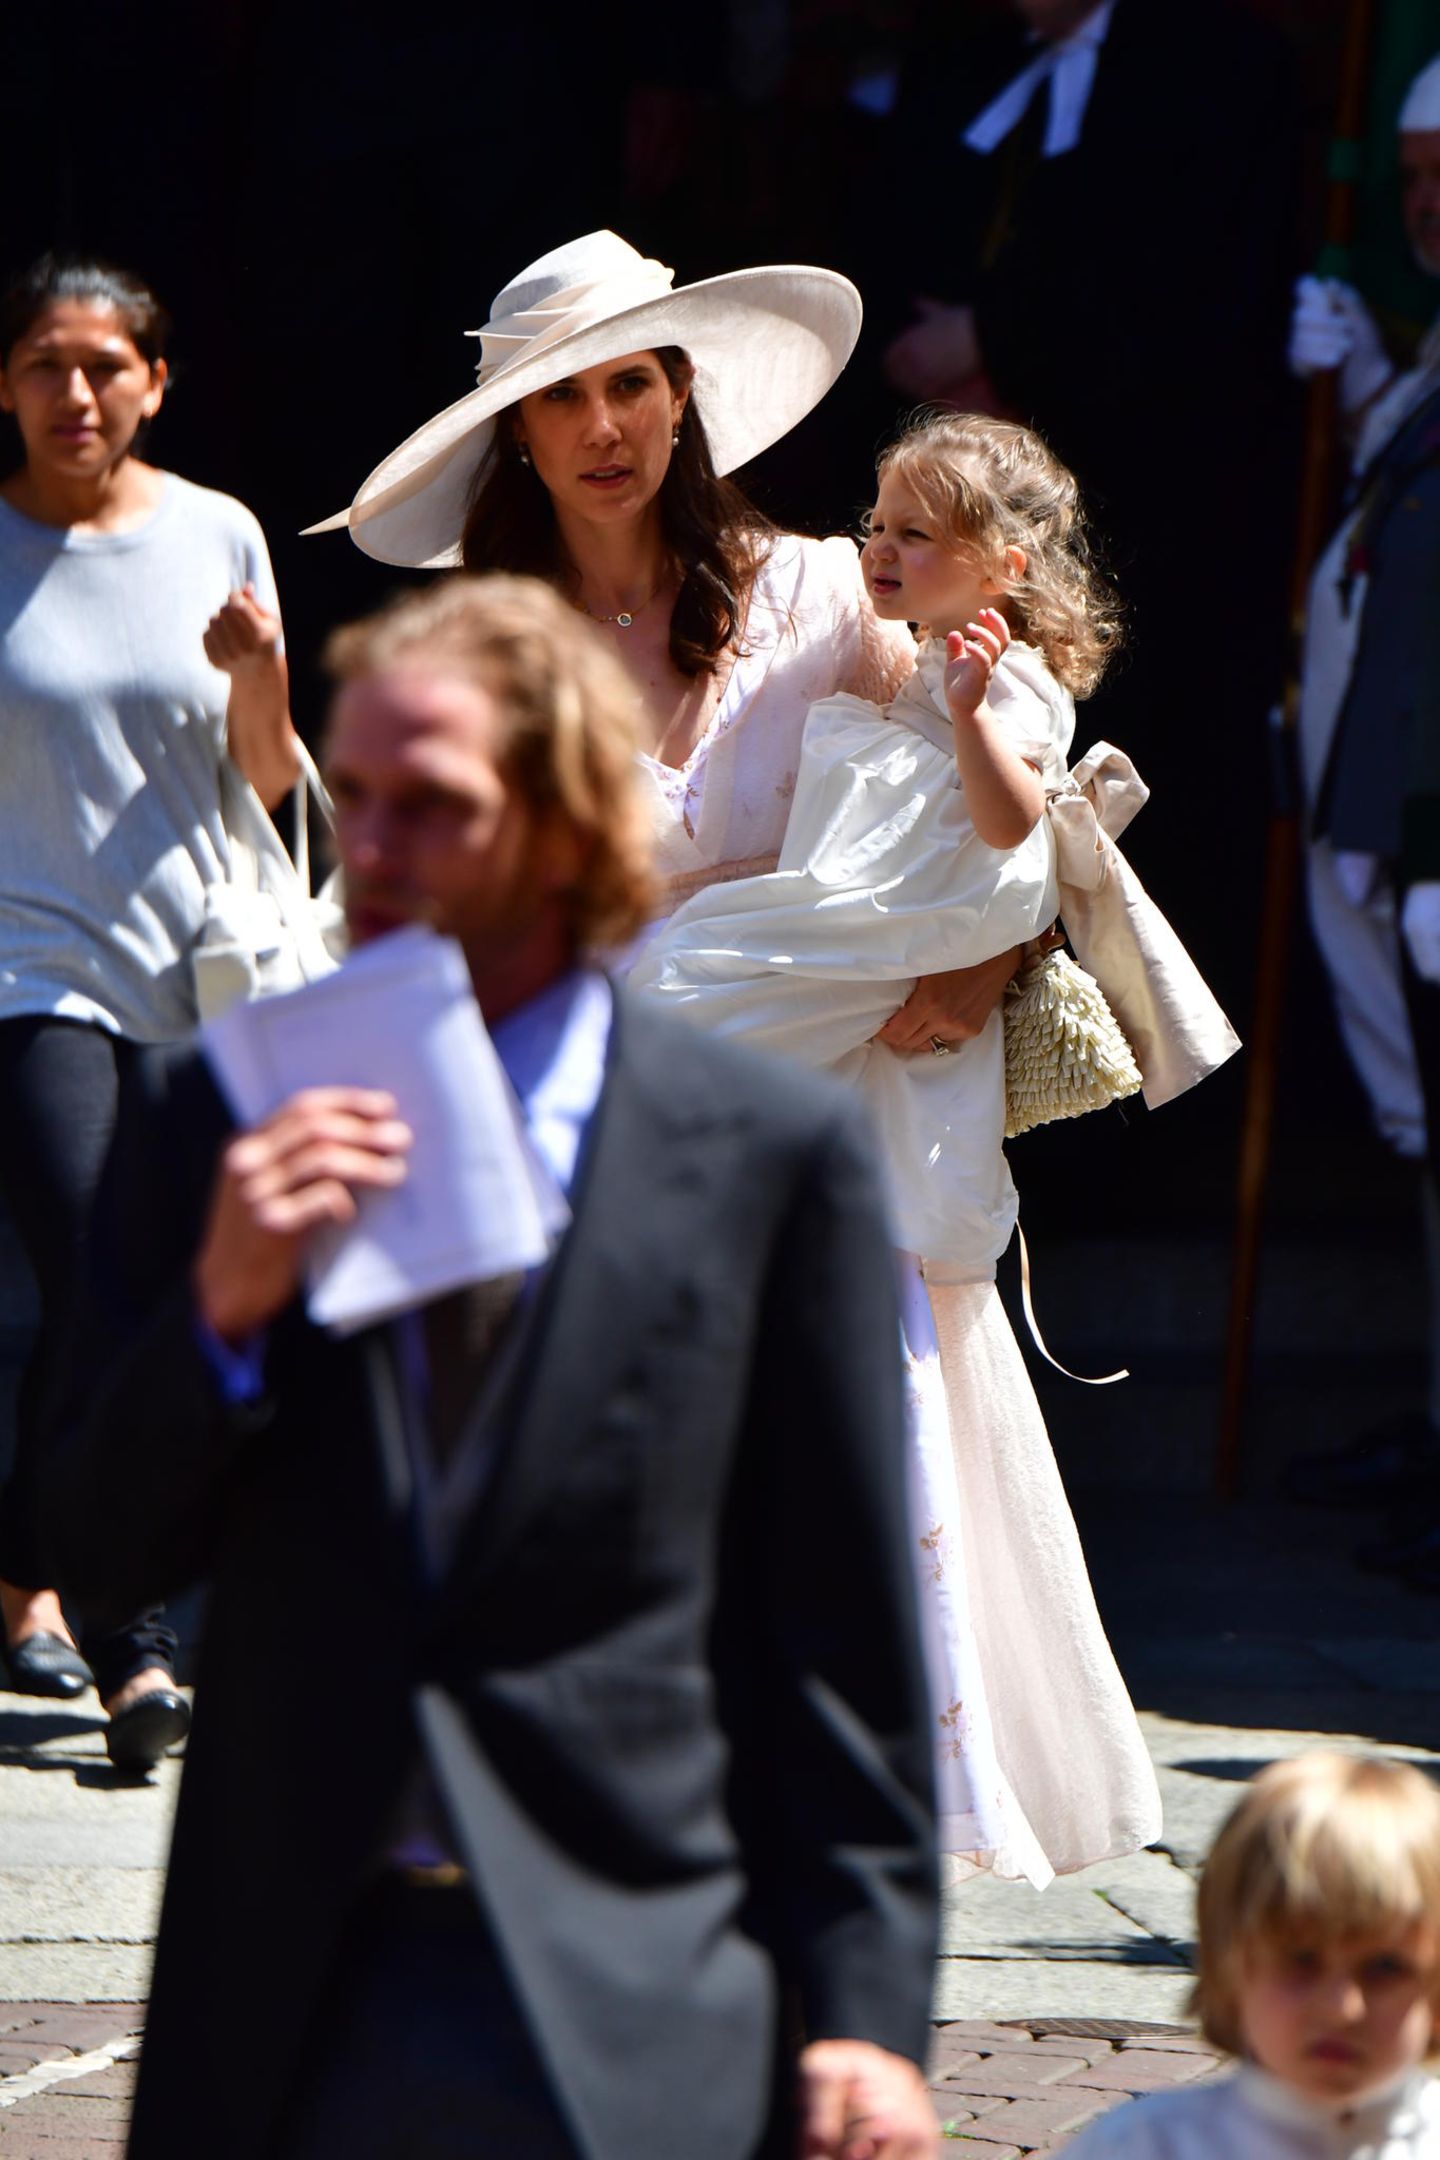 Darunter auch Andrea Casiraghi, der Söhnchen Alexandre an der Hand hält, und seine Frau Tatiana, die Töchterchen India auf dem Arm trägt.